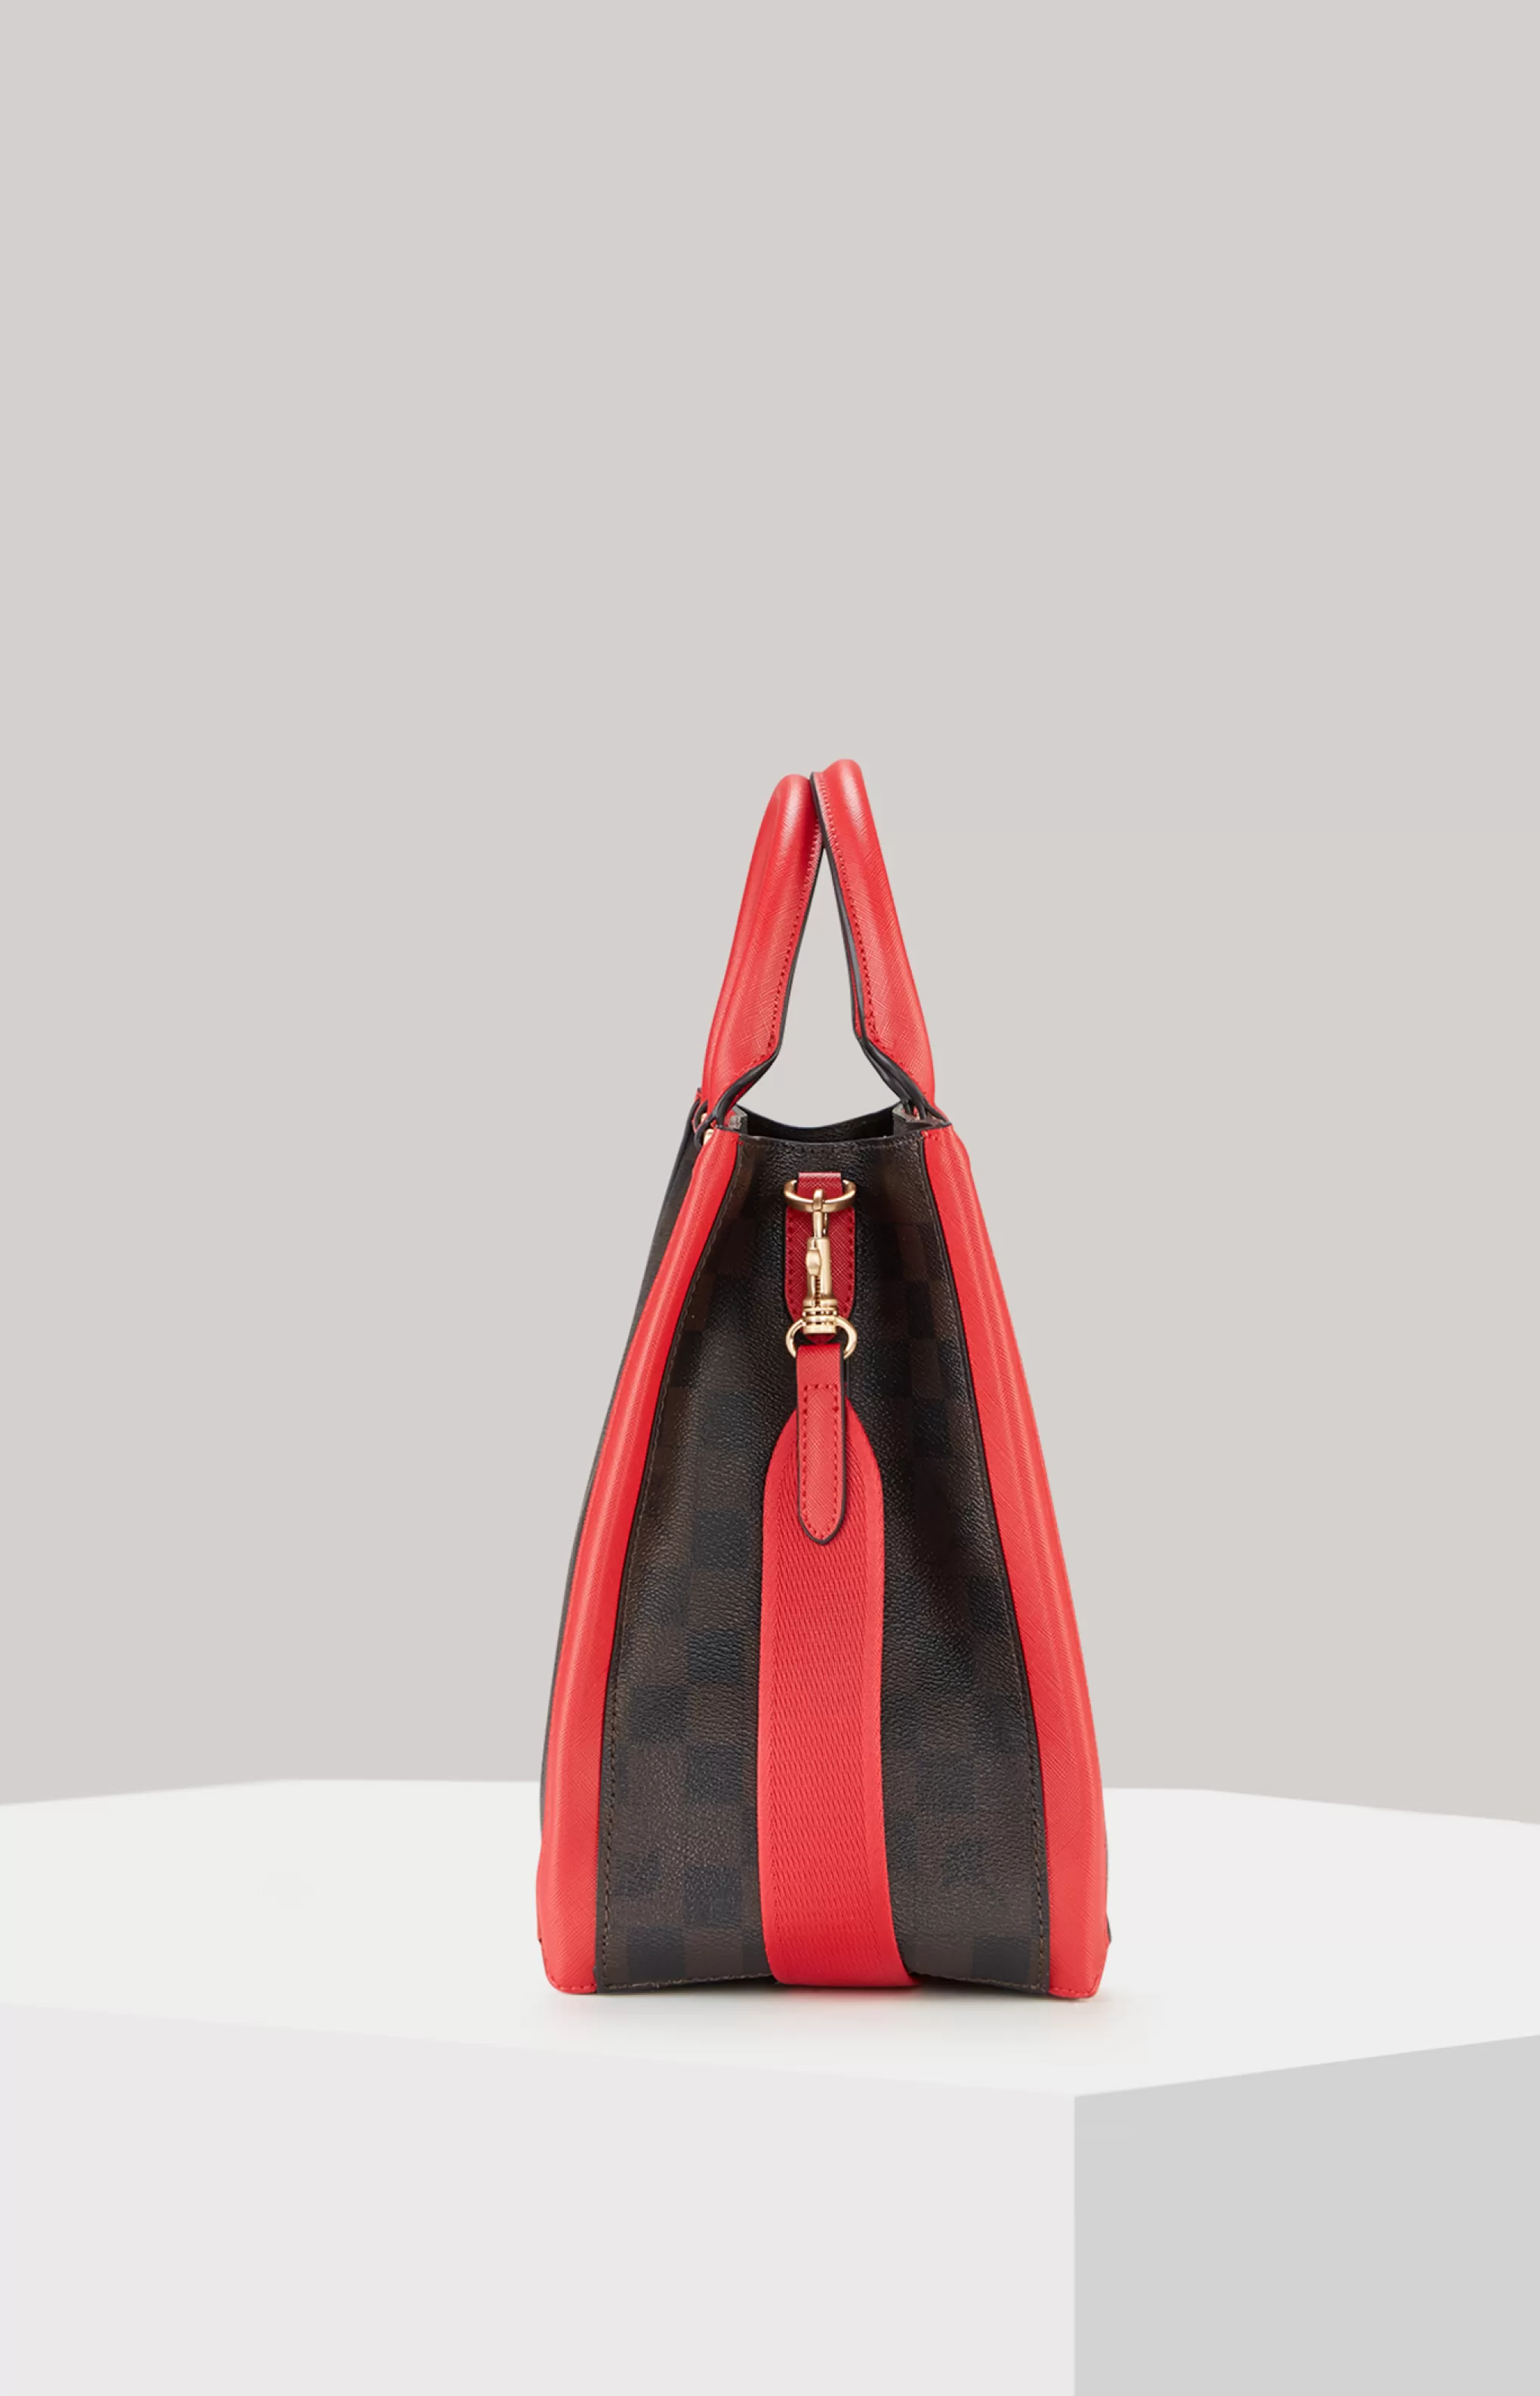 Bags*JOOP Bags Aurelia Piazza Edition Handbag in /Black